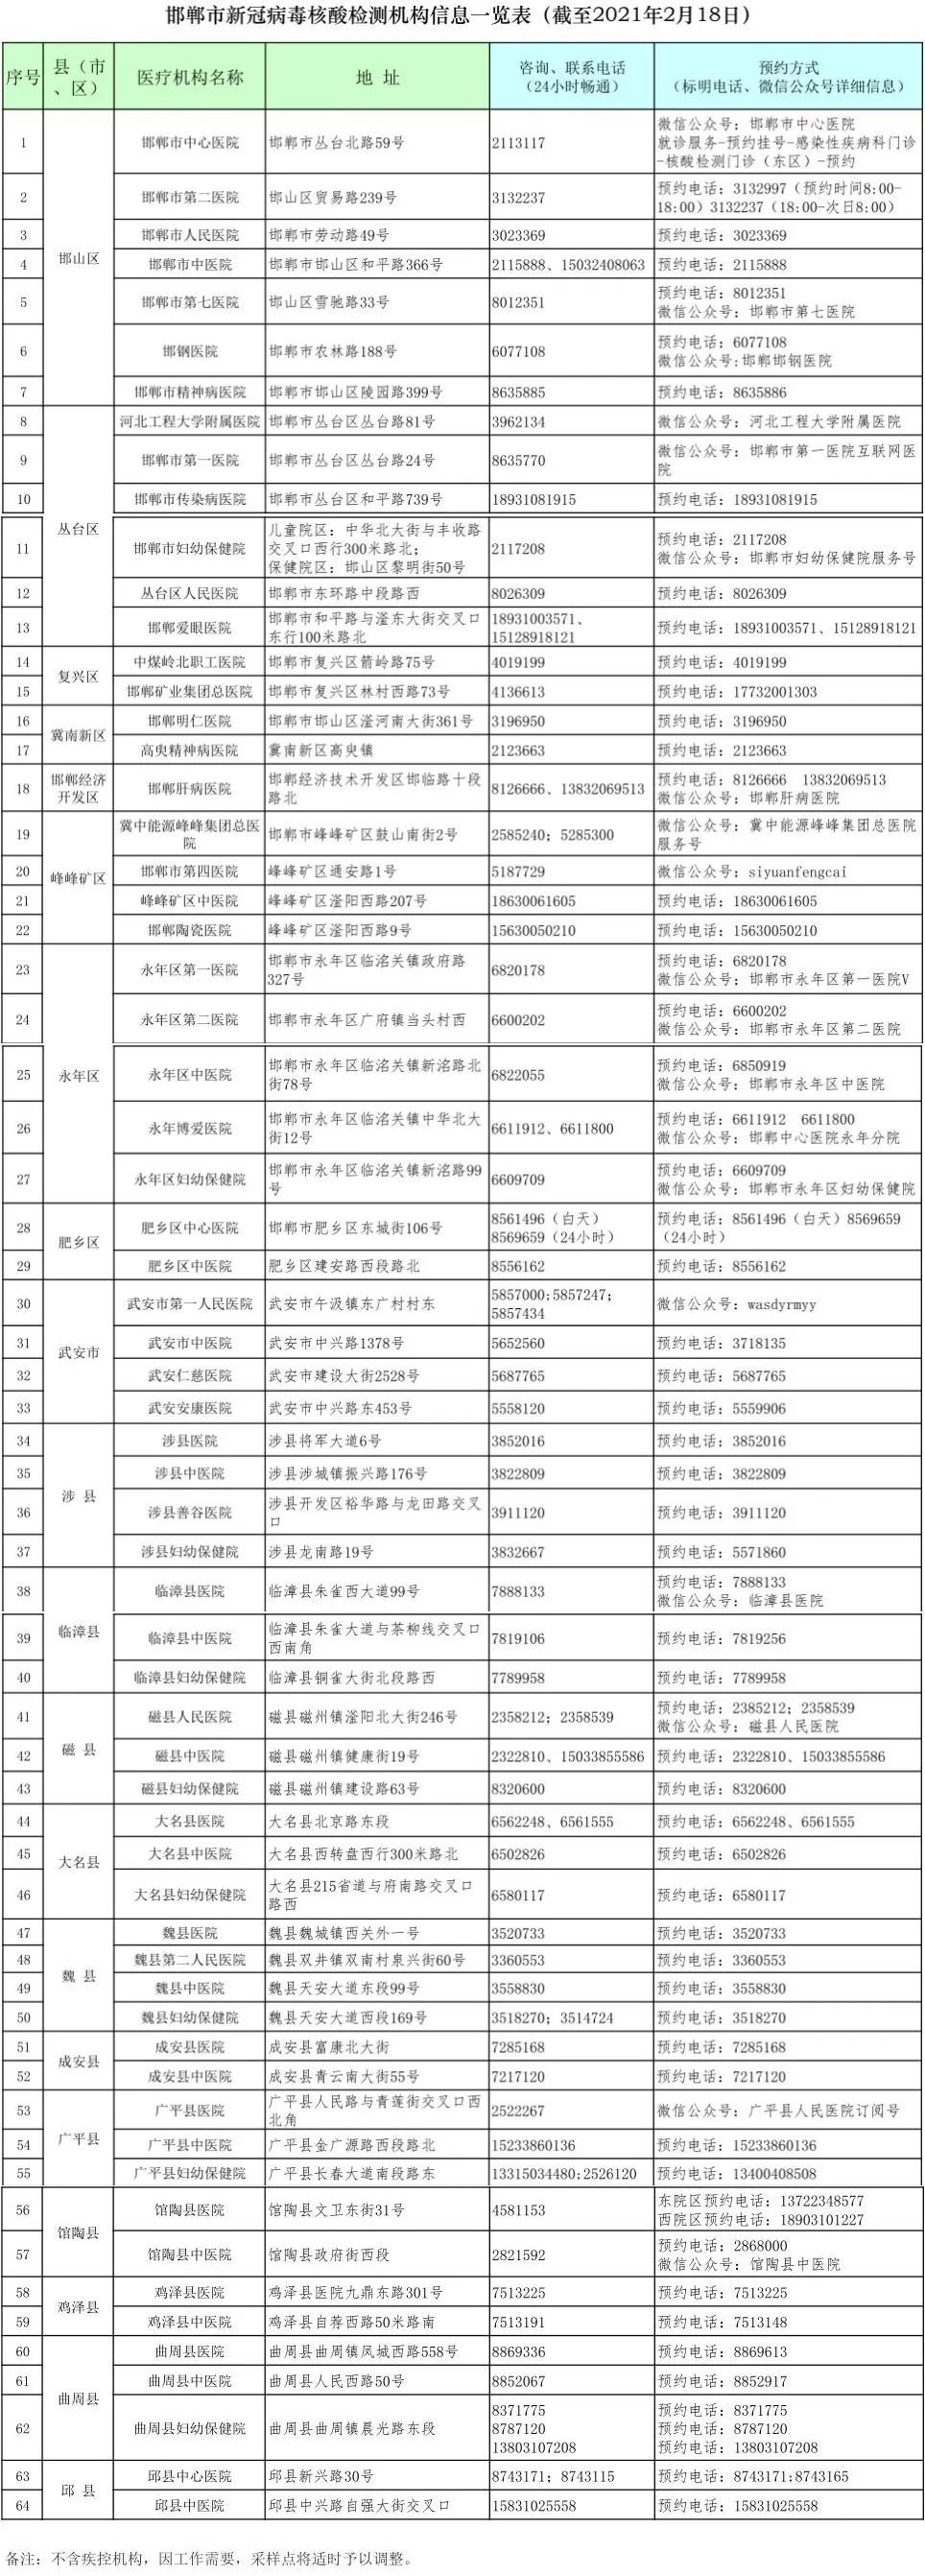 邯郸新冠病毒检测机构名单